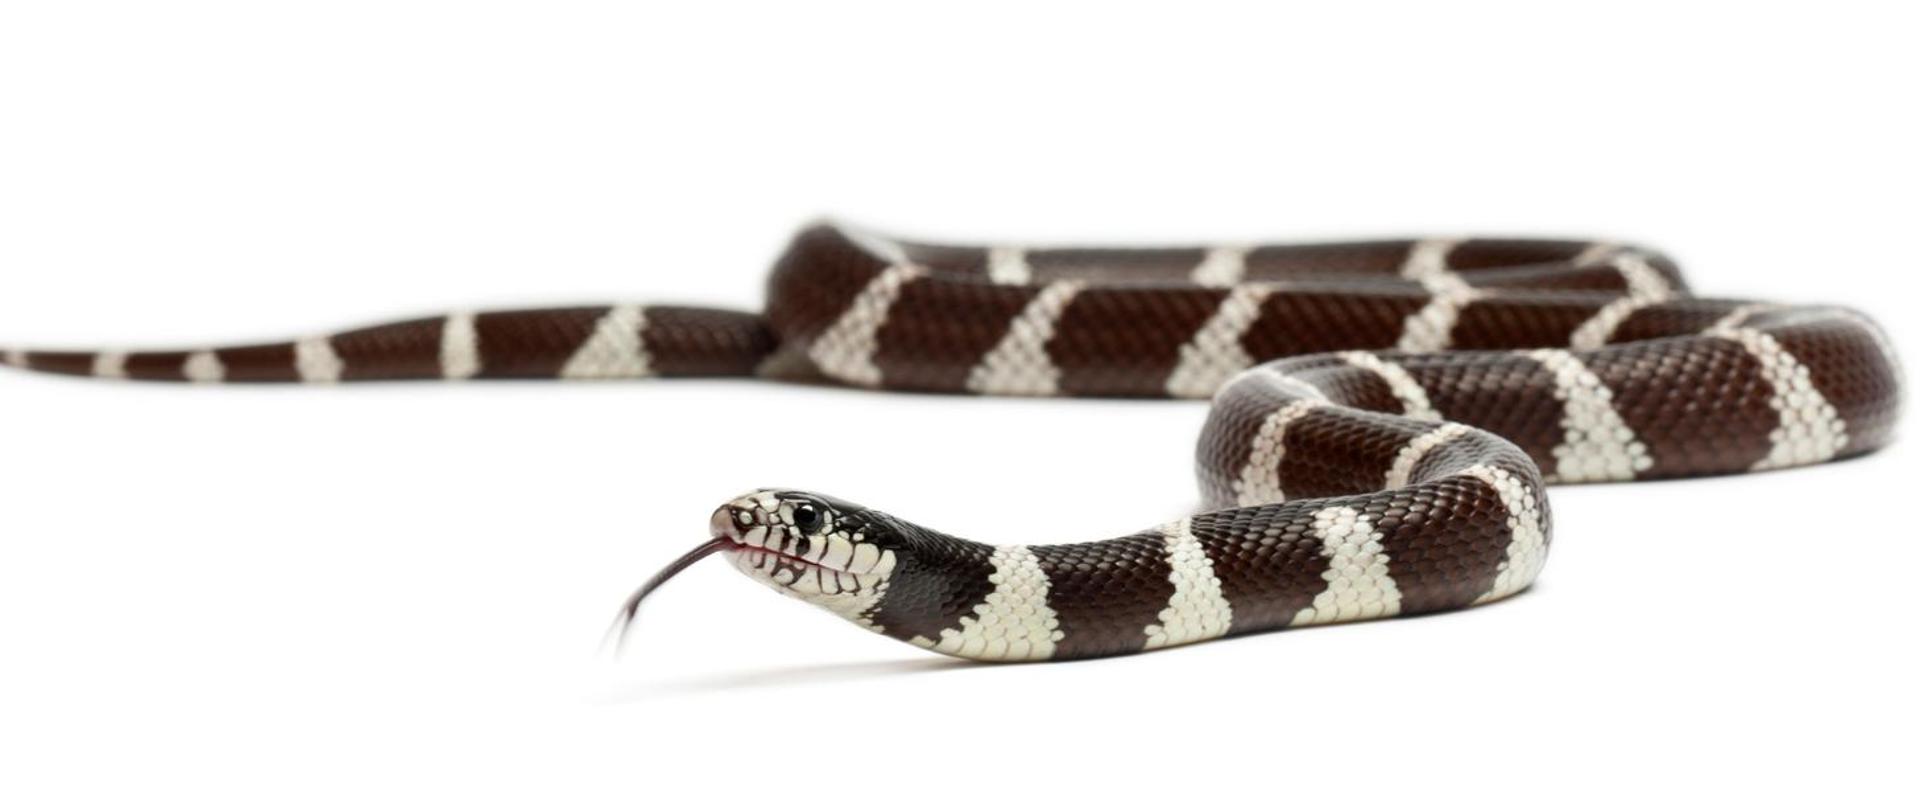 Biało-brązowy wąż z gatunku lancetogłów królewski na białym tle.